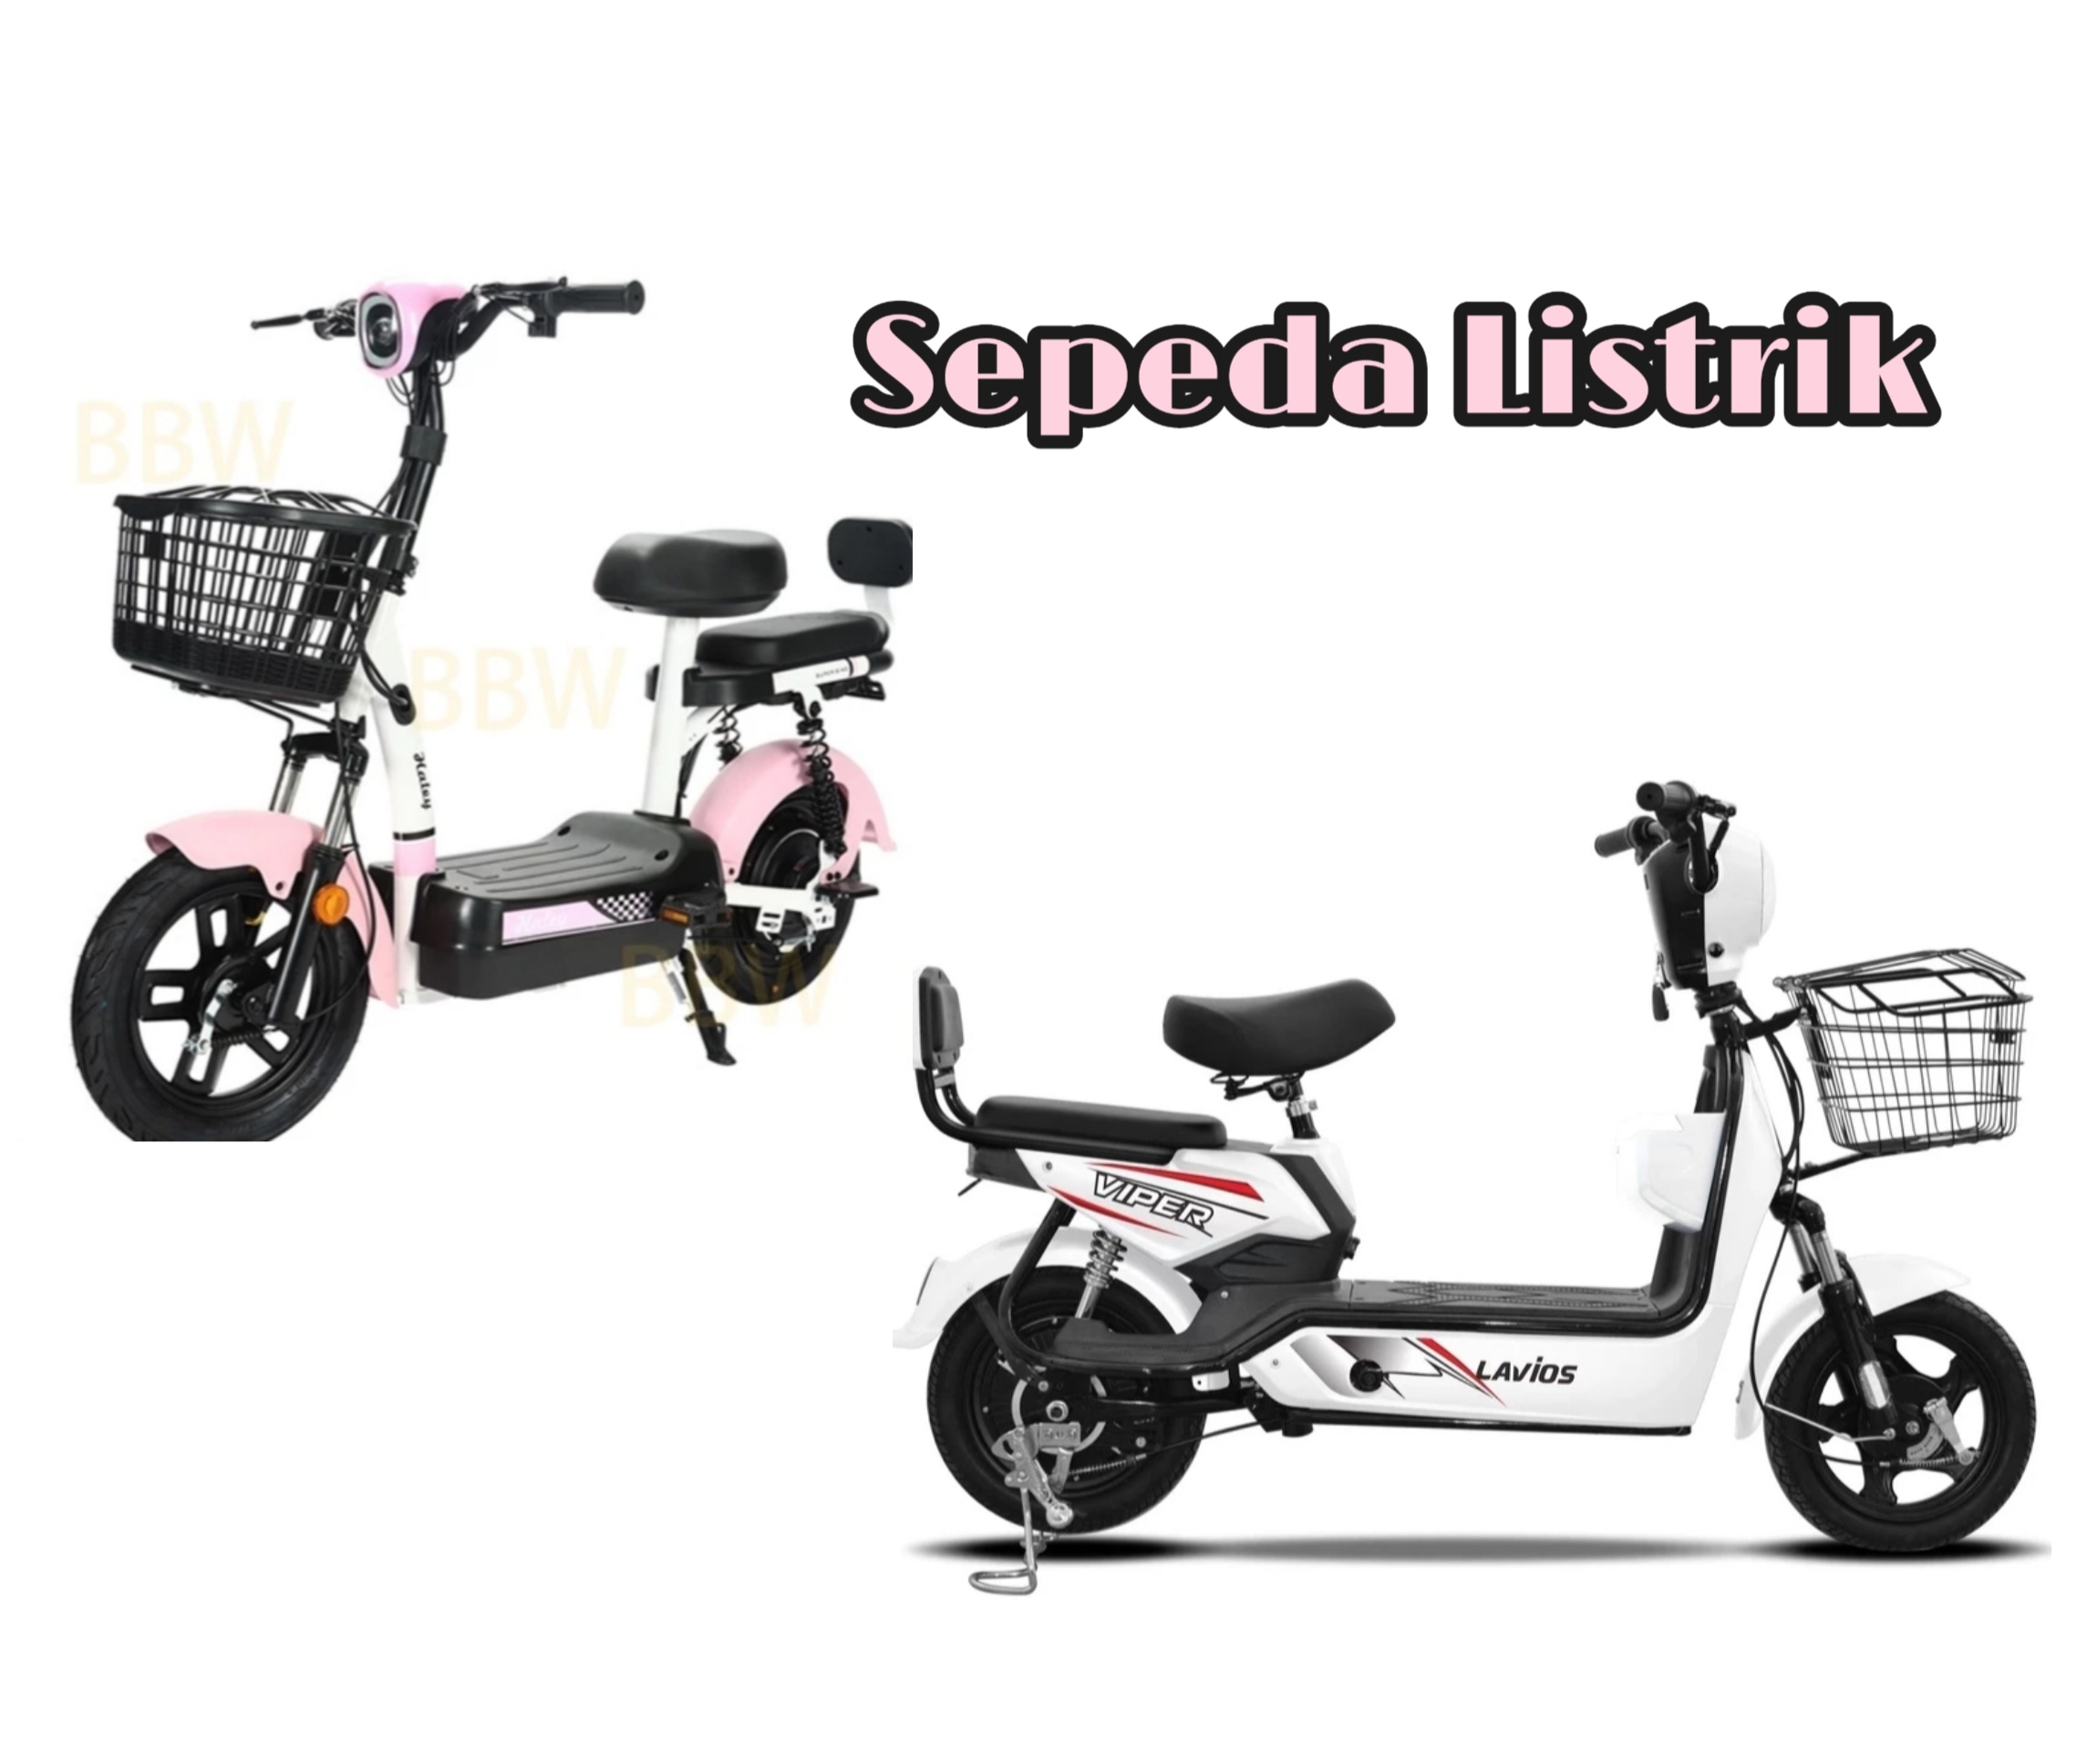 9 Rekomendasi Sepeda Listrik Power 350 Watt Cocok Untuk Anak dan Perempuan, Update Harga Terbaru